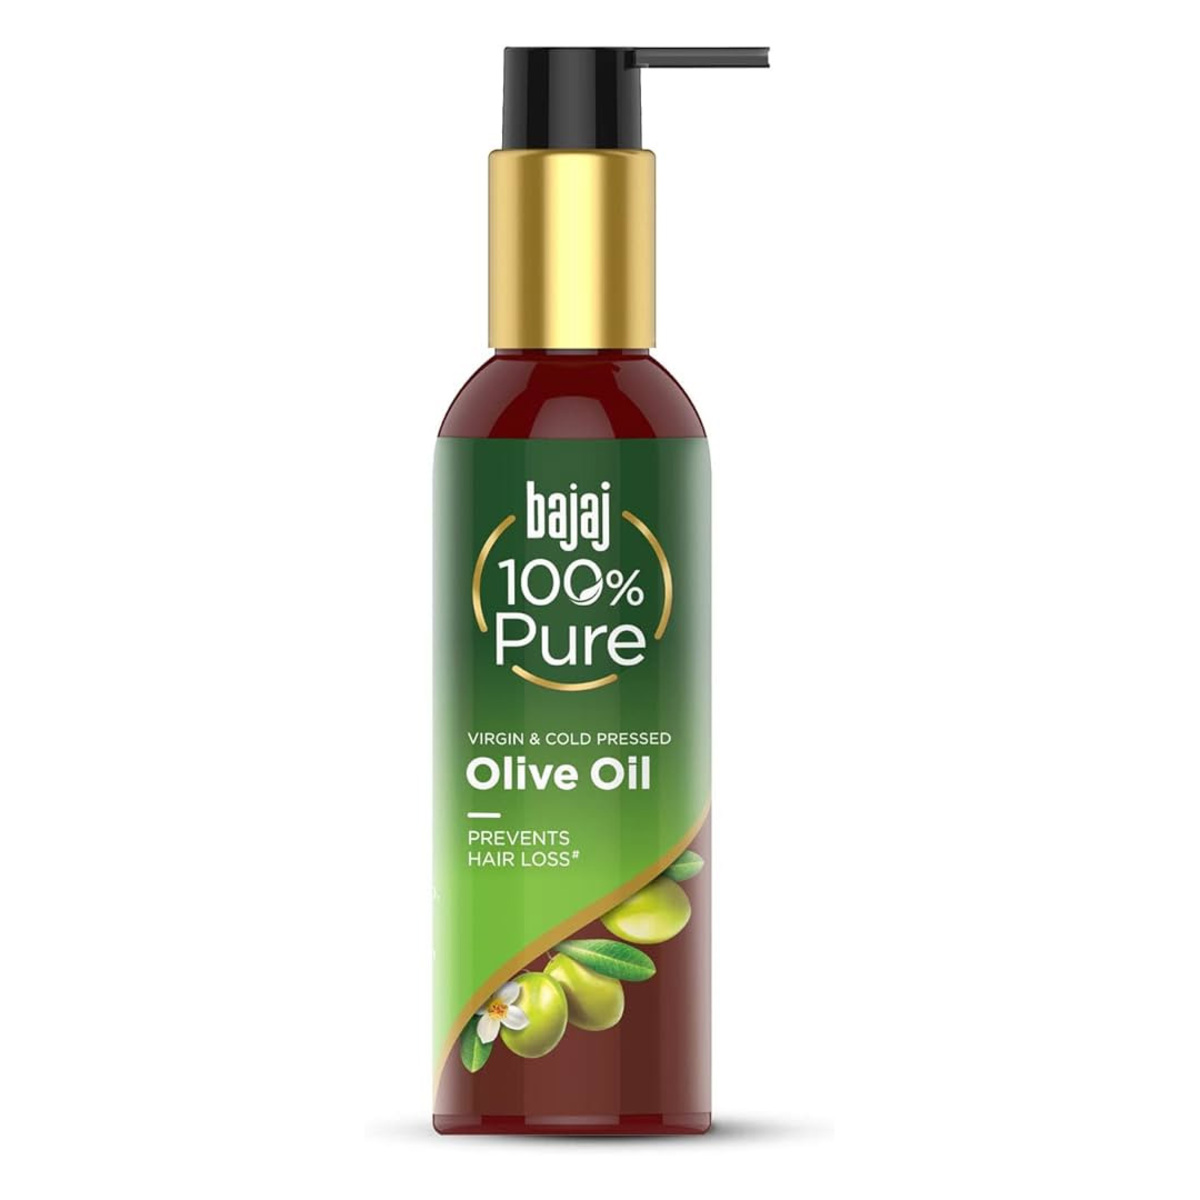 Bajaj 100% Pure Olive Oil 200ml